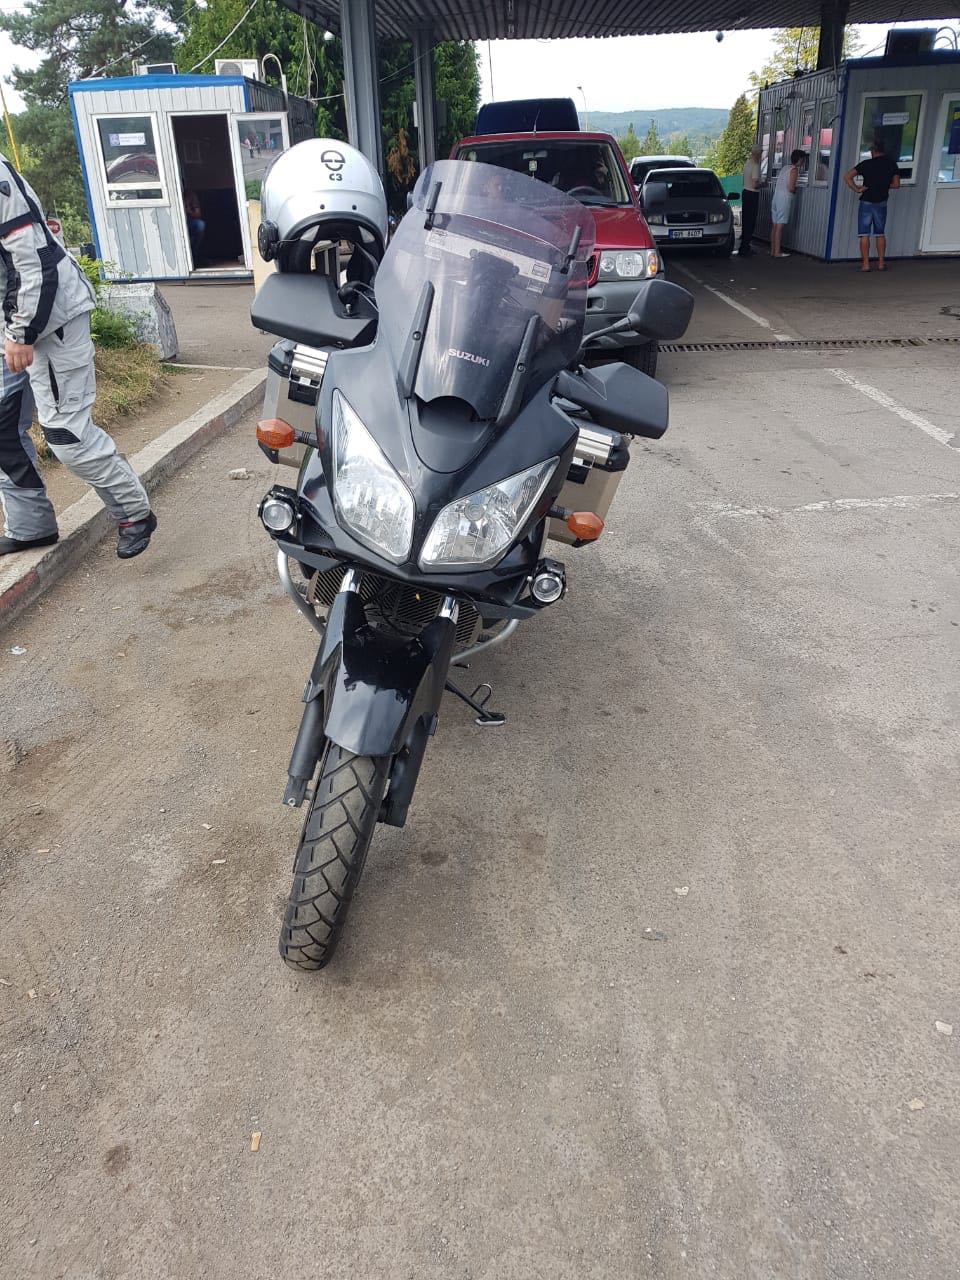 Громадянин Чехії приїхав у ПП "Ужгород" на вкраденому в Італії мотоциклі (ФОТО)